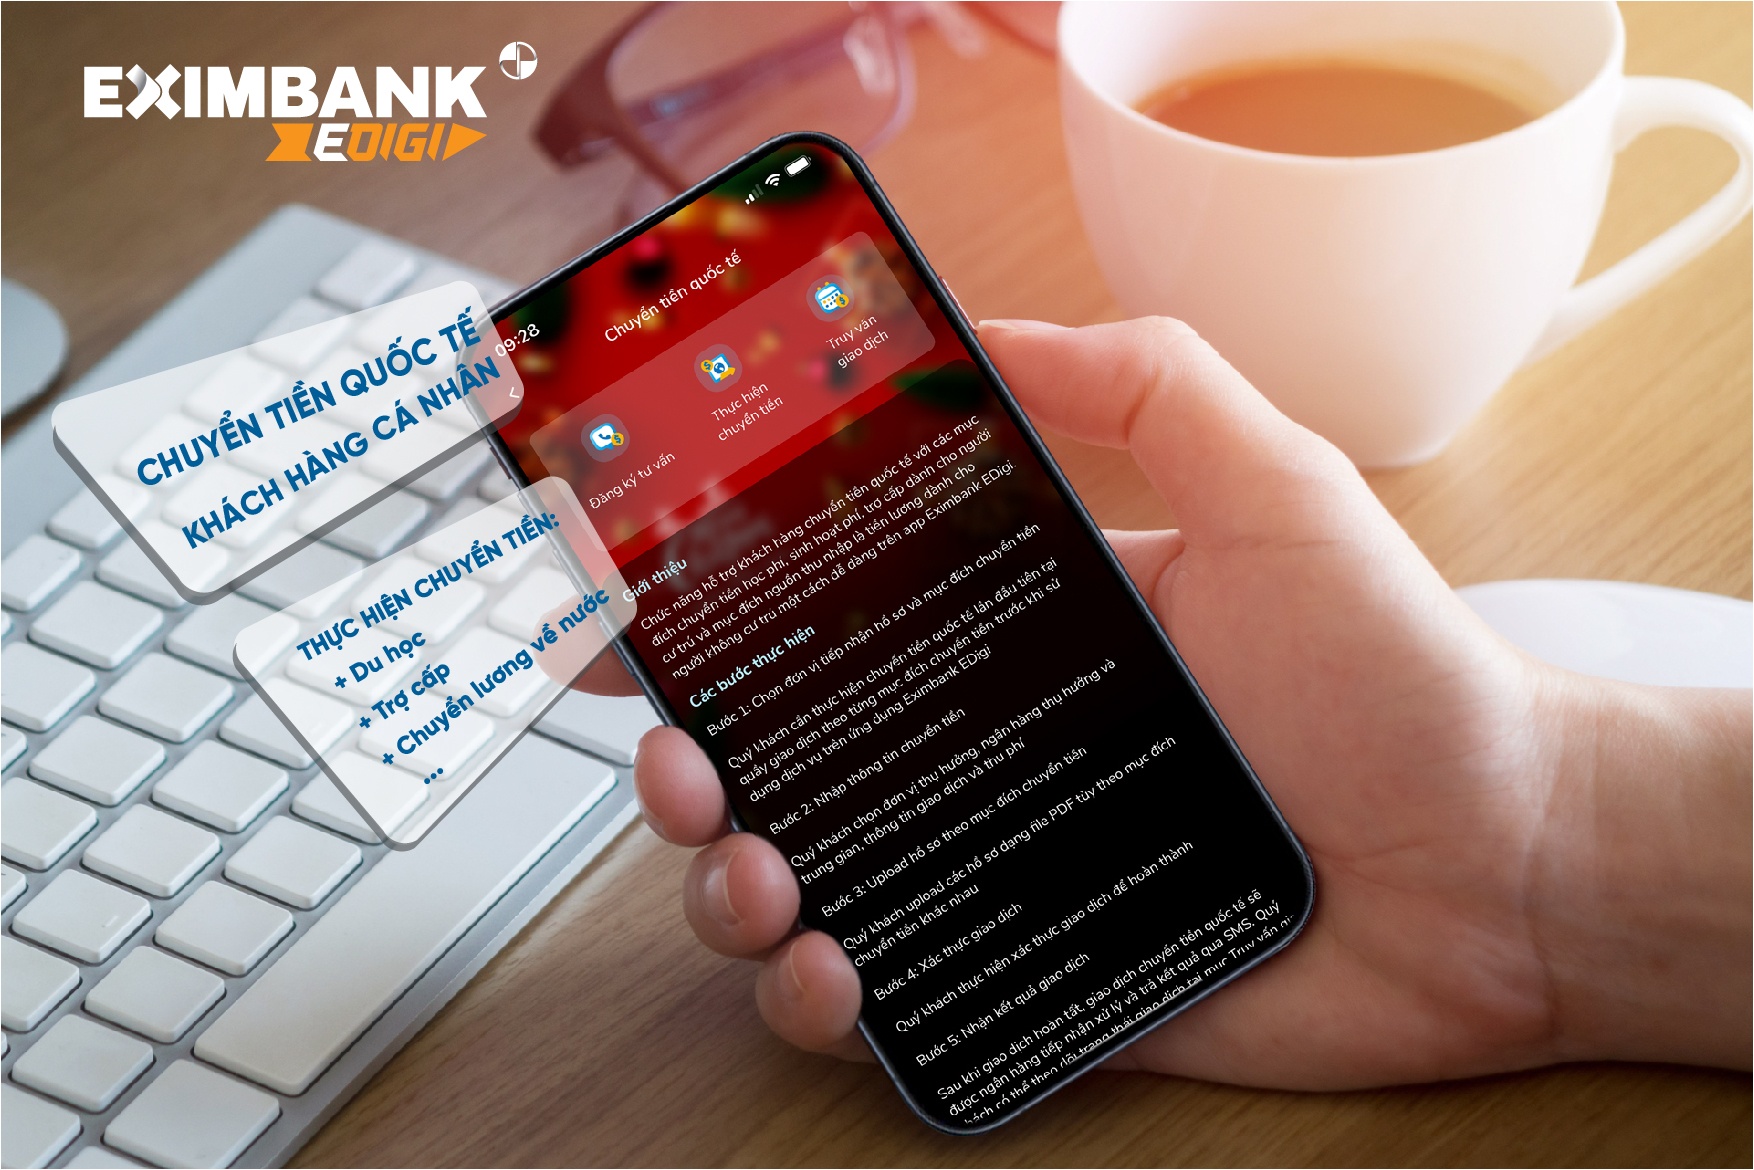 Chuyển tiền quốc tế online trên App Eximbank EDigi